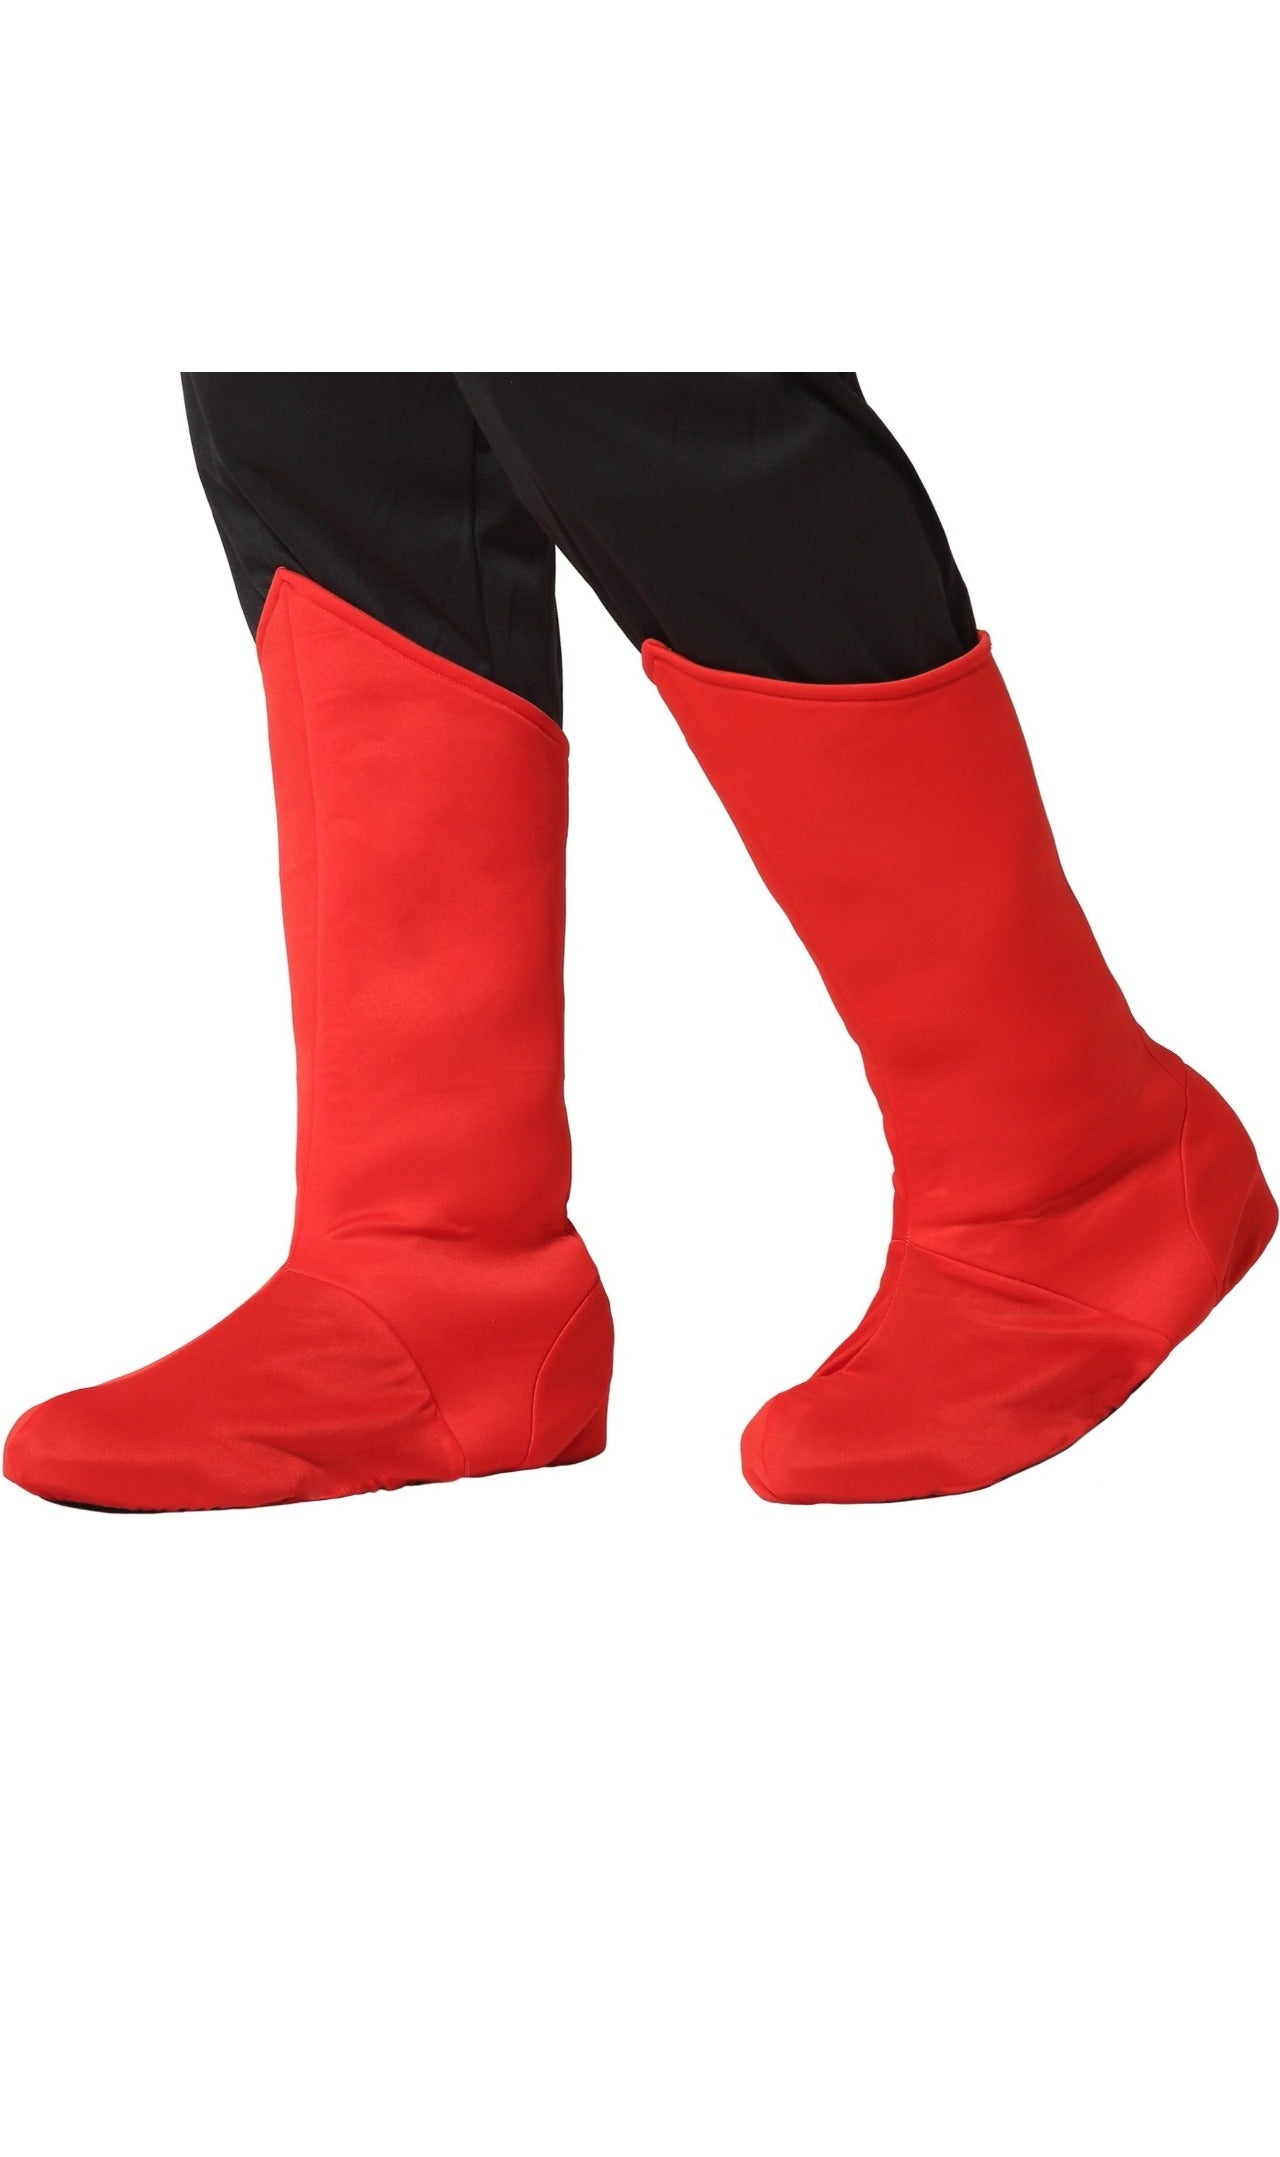 Capa para botas Vermelha do Super herói